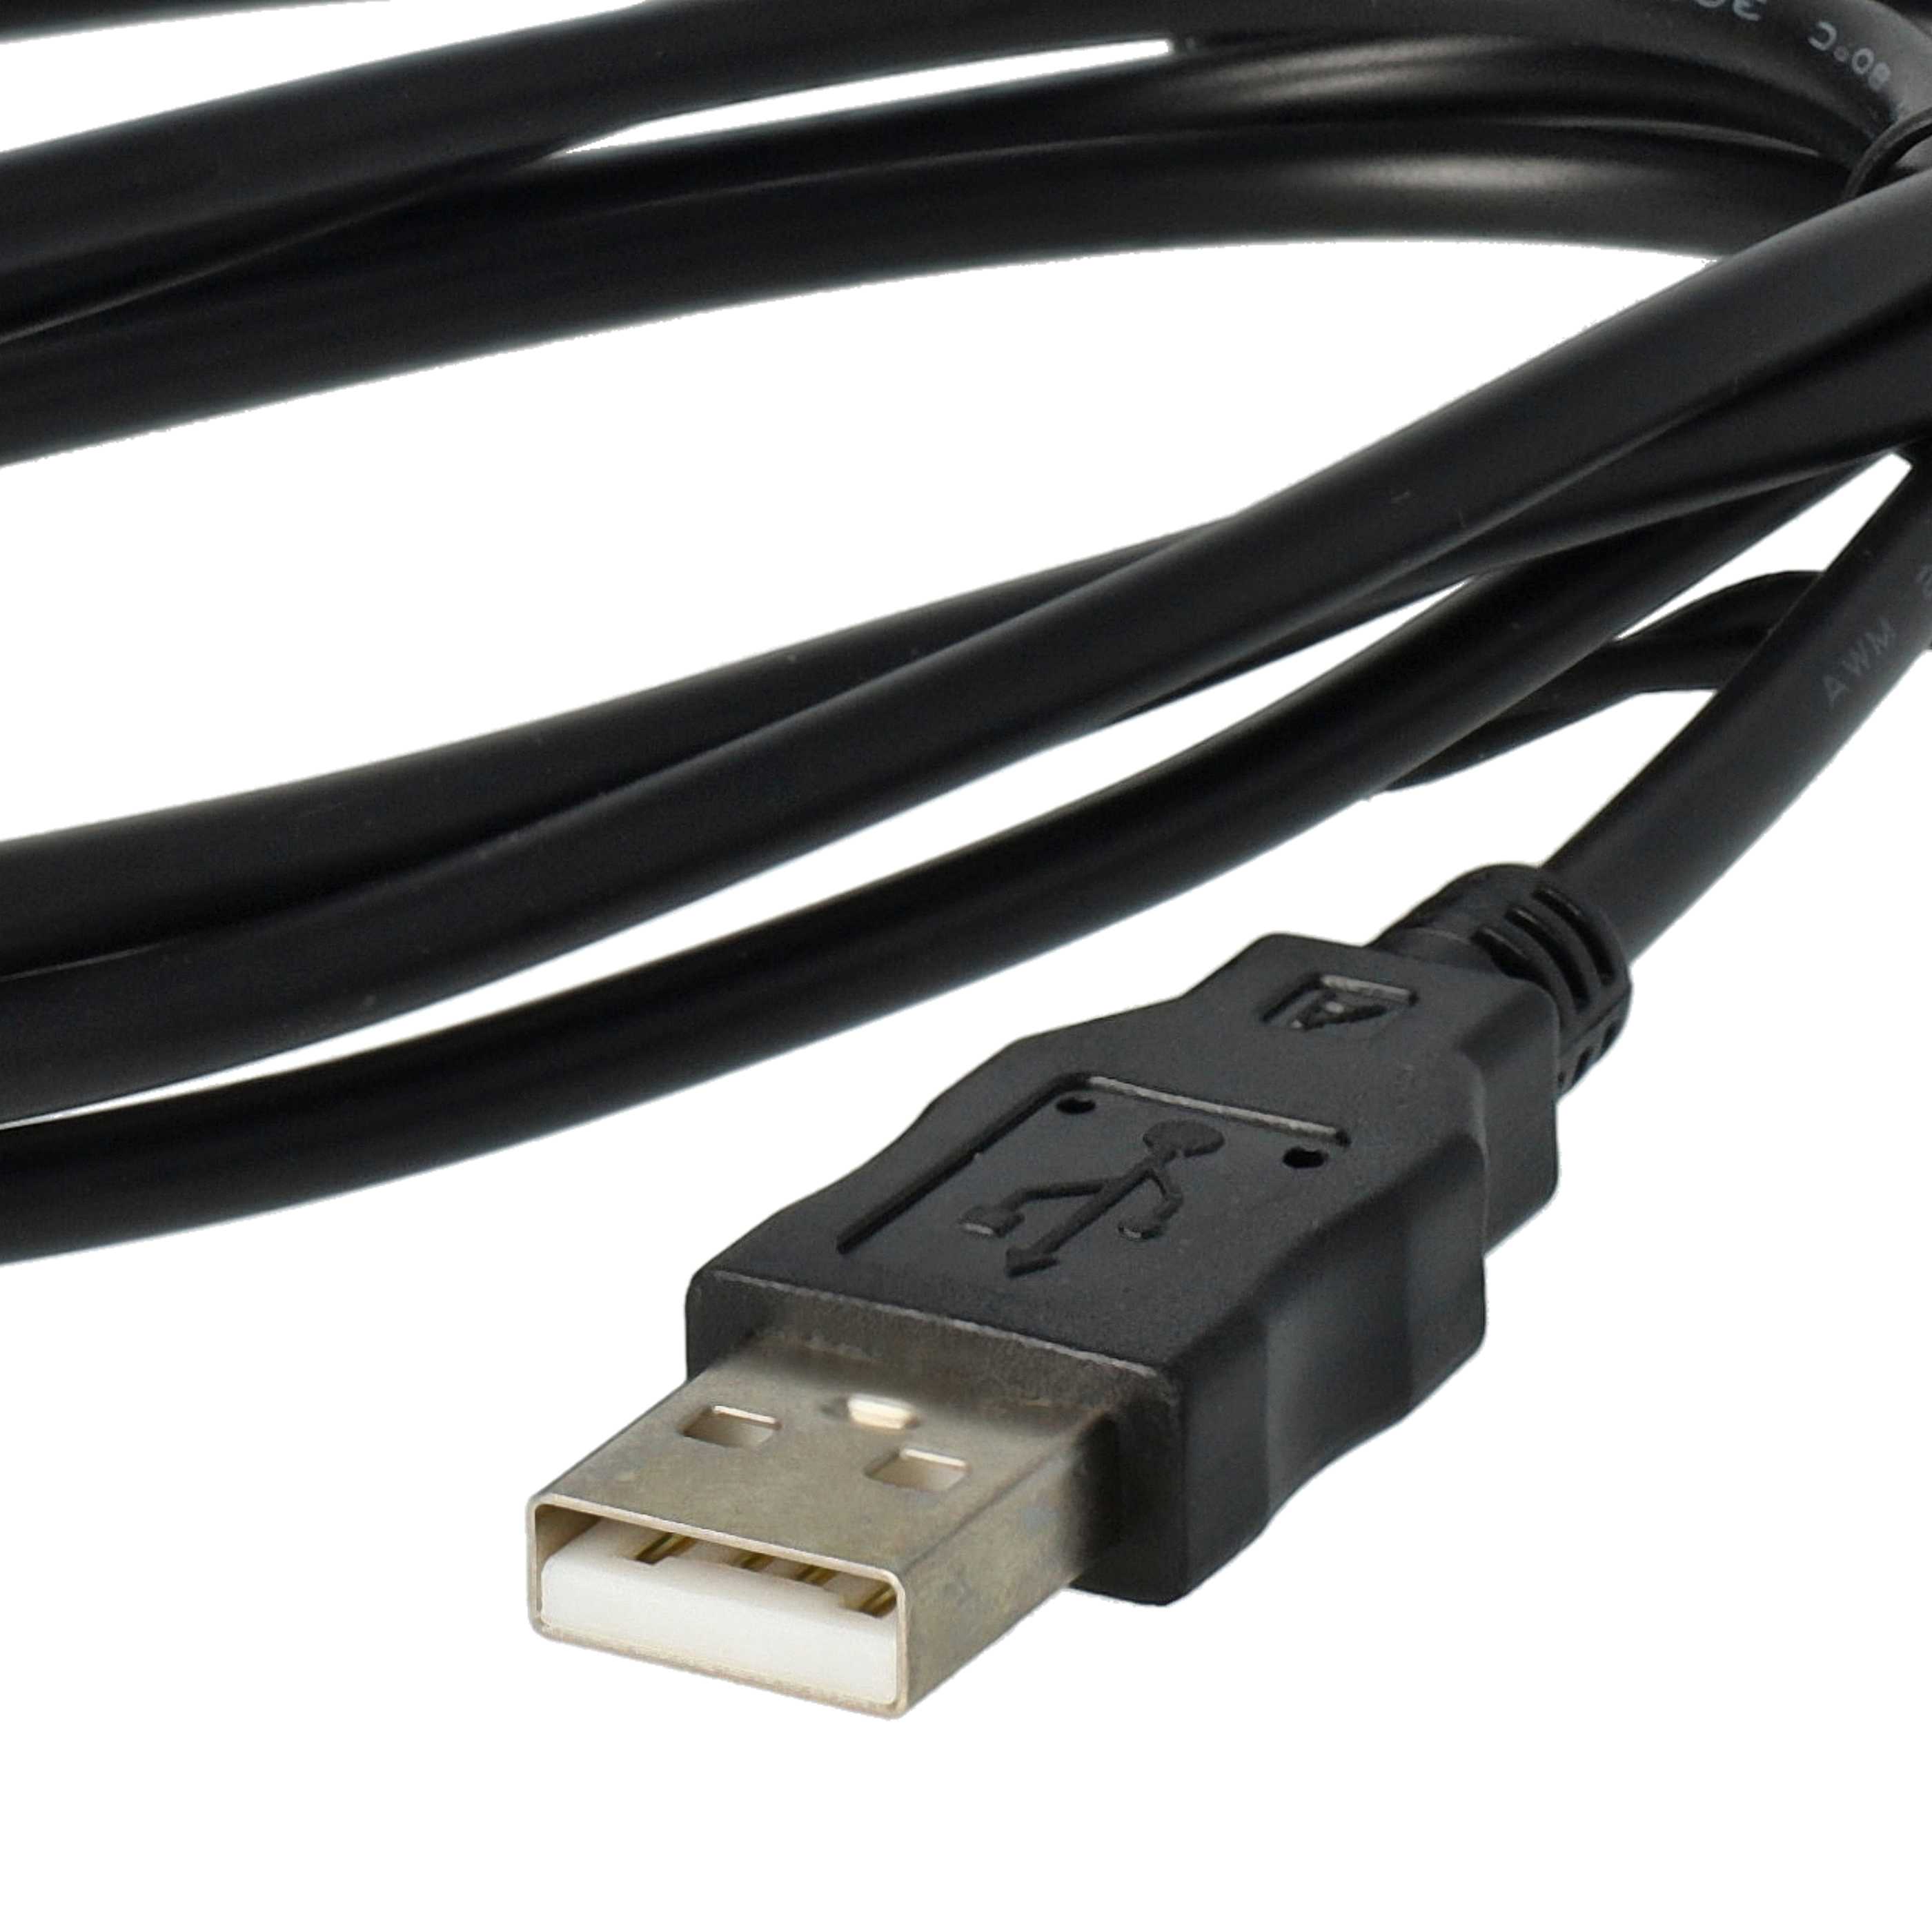 USB Datenkabel als Ersatz für Sony VMC-MD3 (ohne AV-Funktion) für Kamera - 150 cm